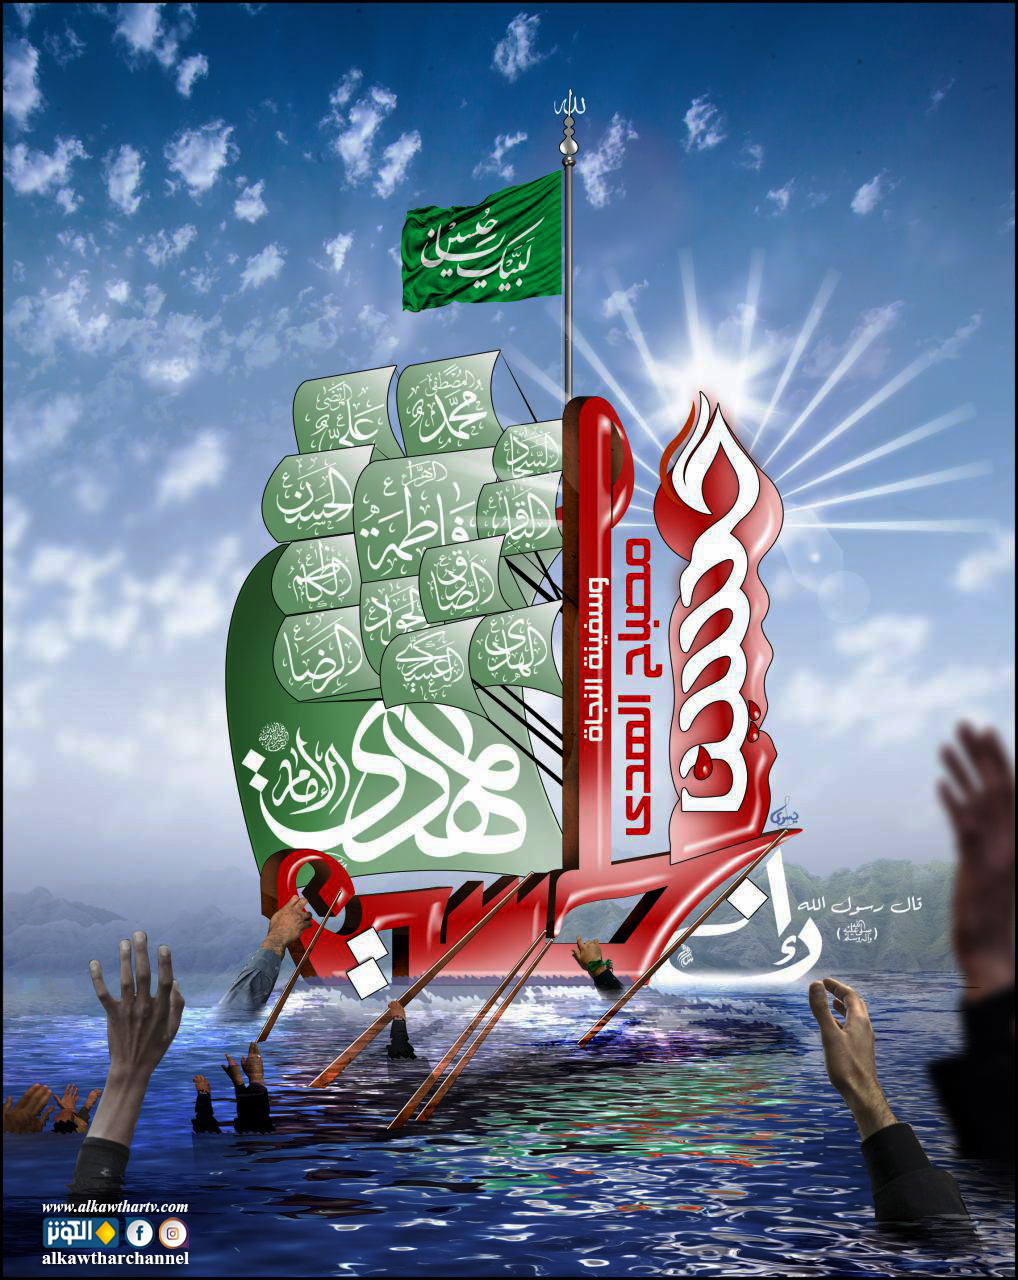 الحسين سفينة النجاة